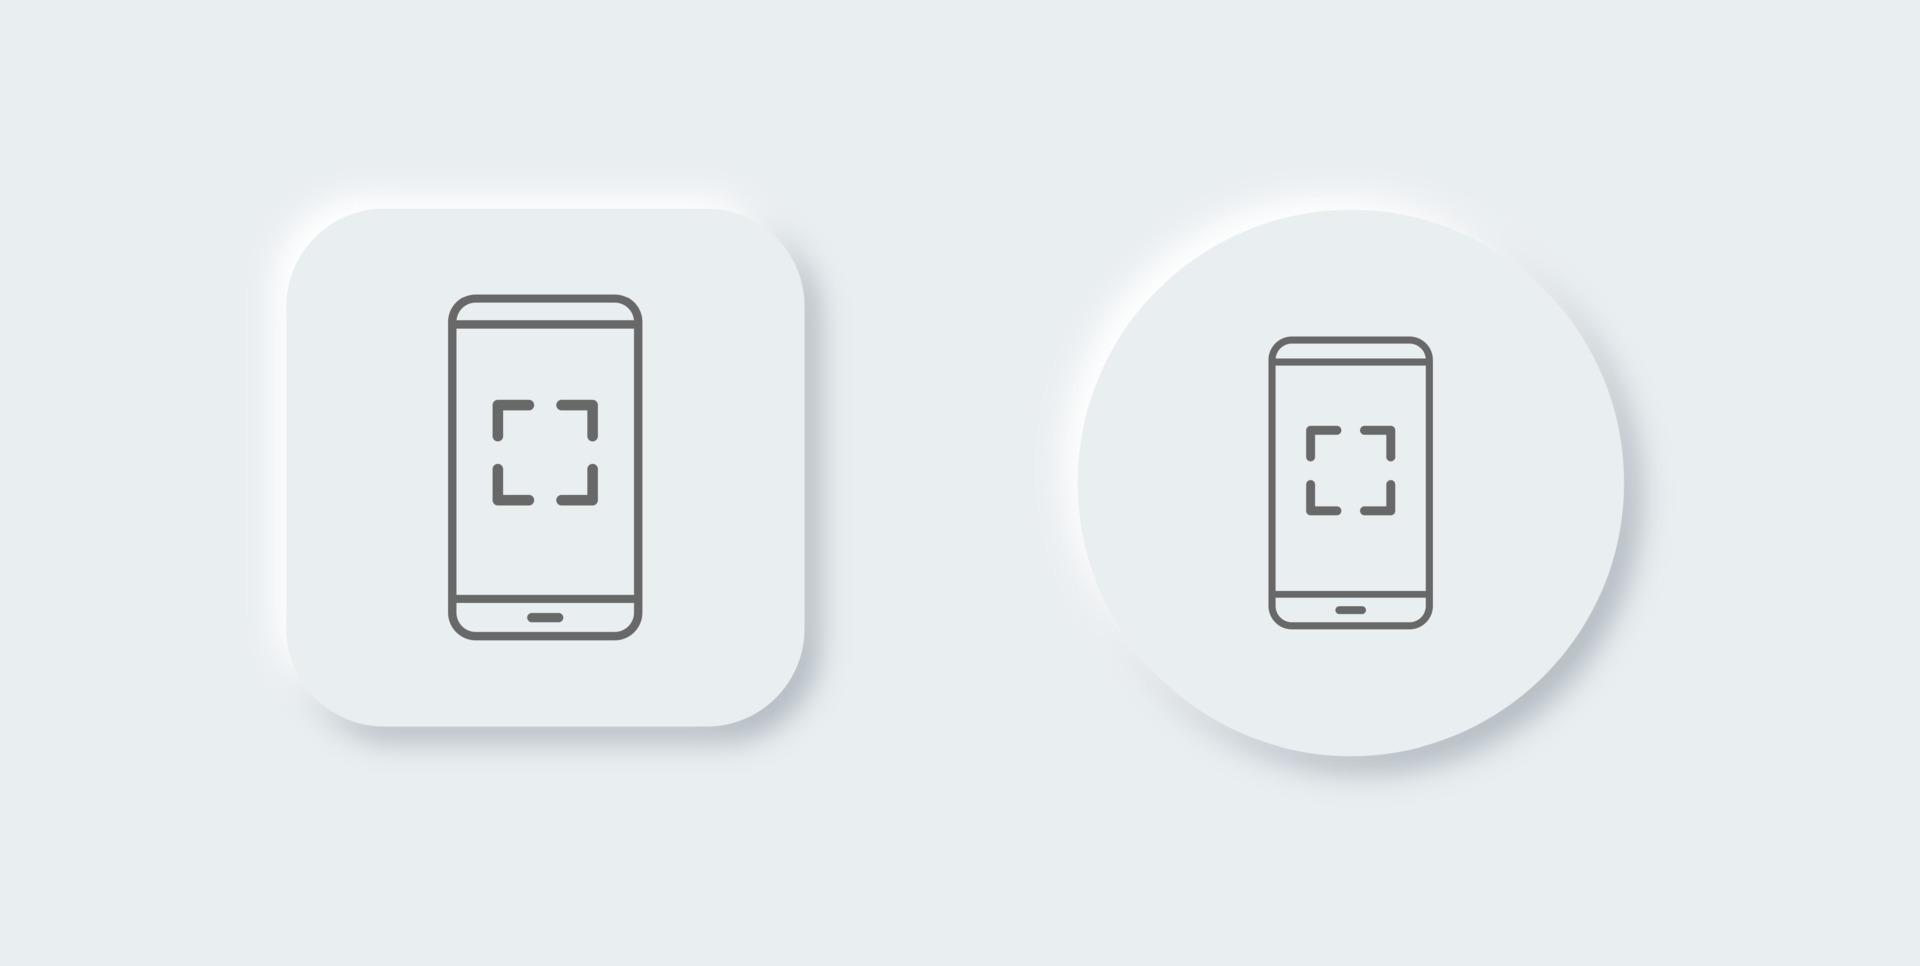 icona di scansione dello smartphone o del telefono in stile neomorfo. illustrazione vettoriale del telefono cellulare.